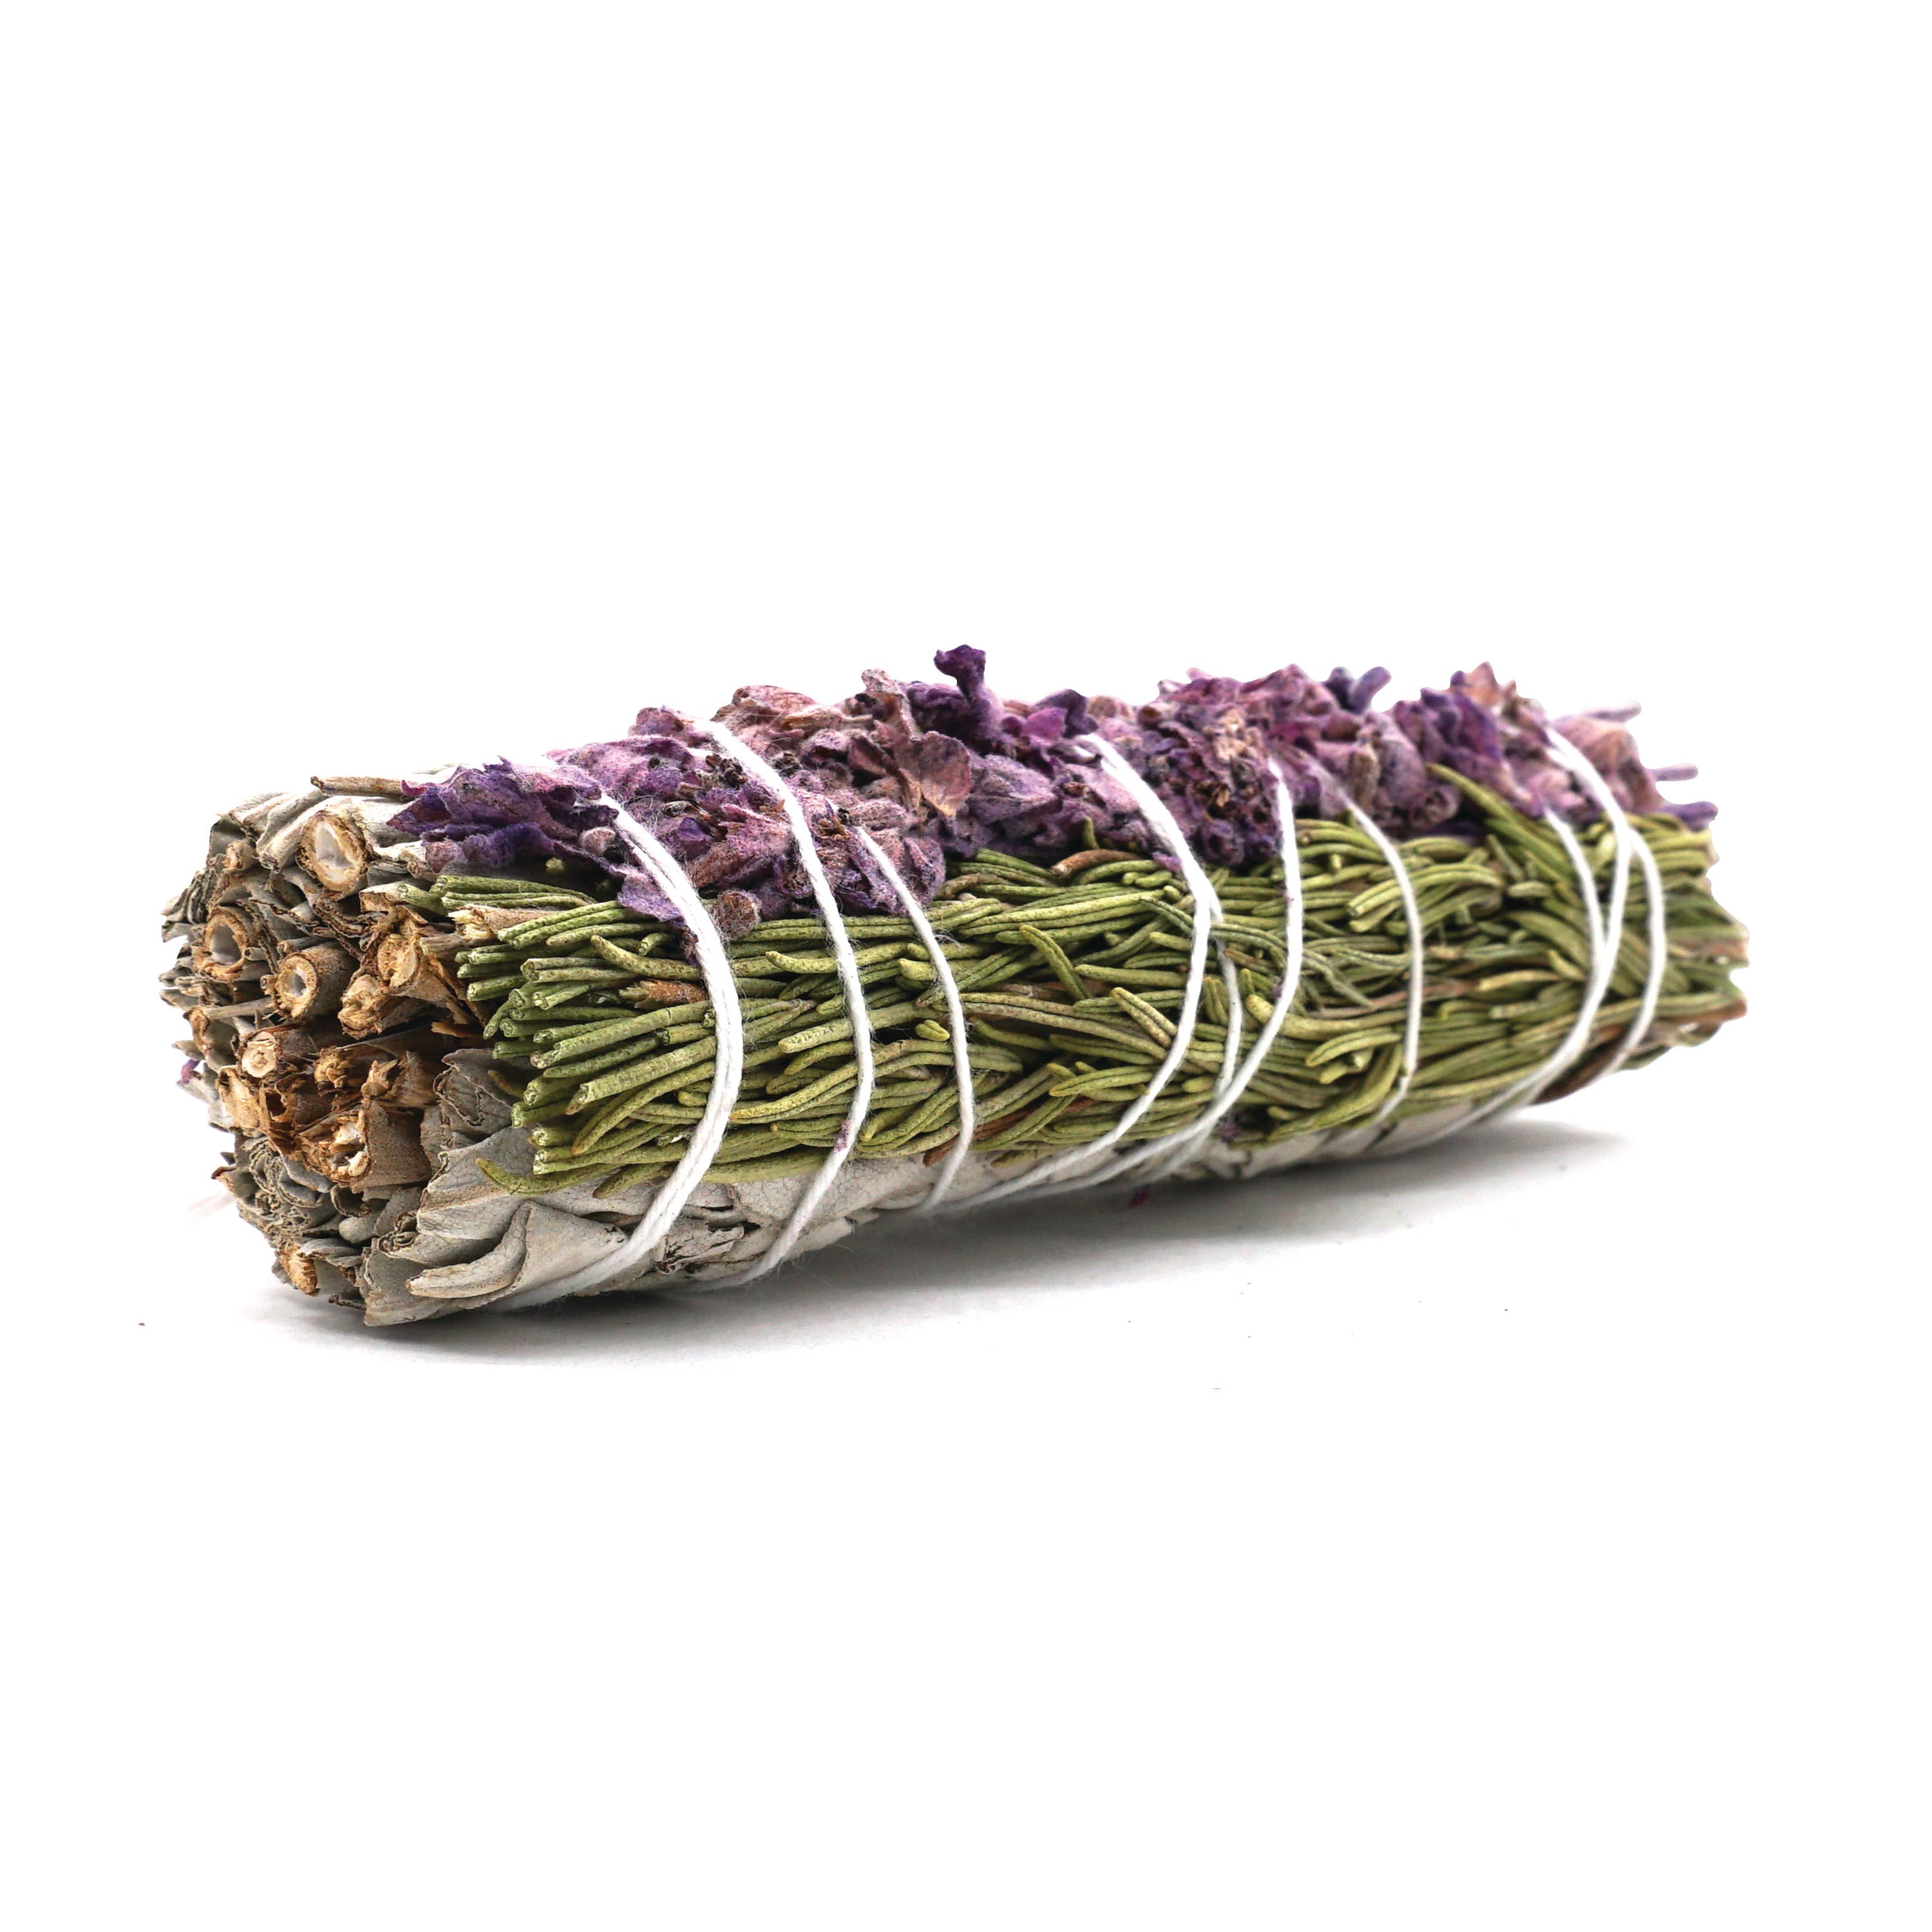 Lavender, Rosemary Sage Smudge Bundles